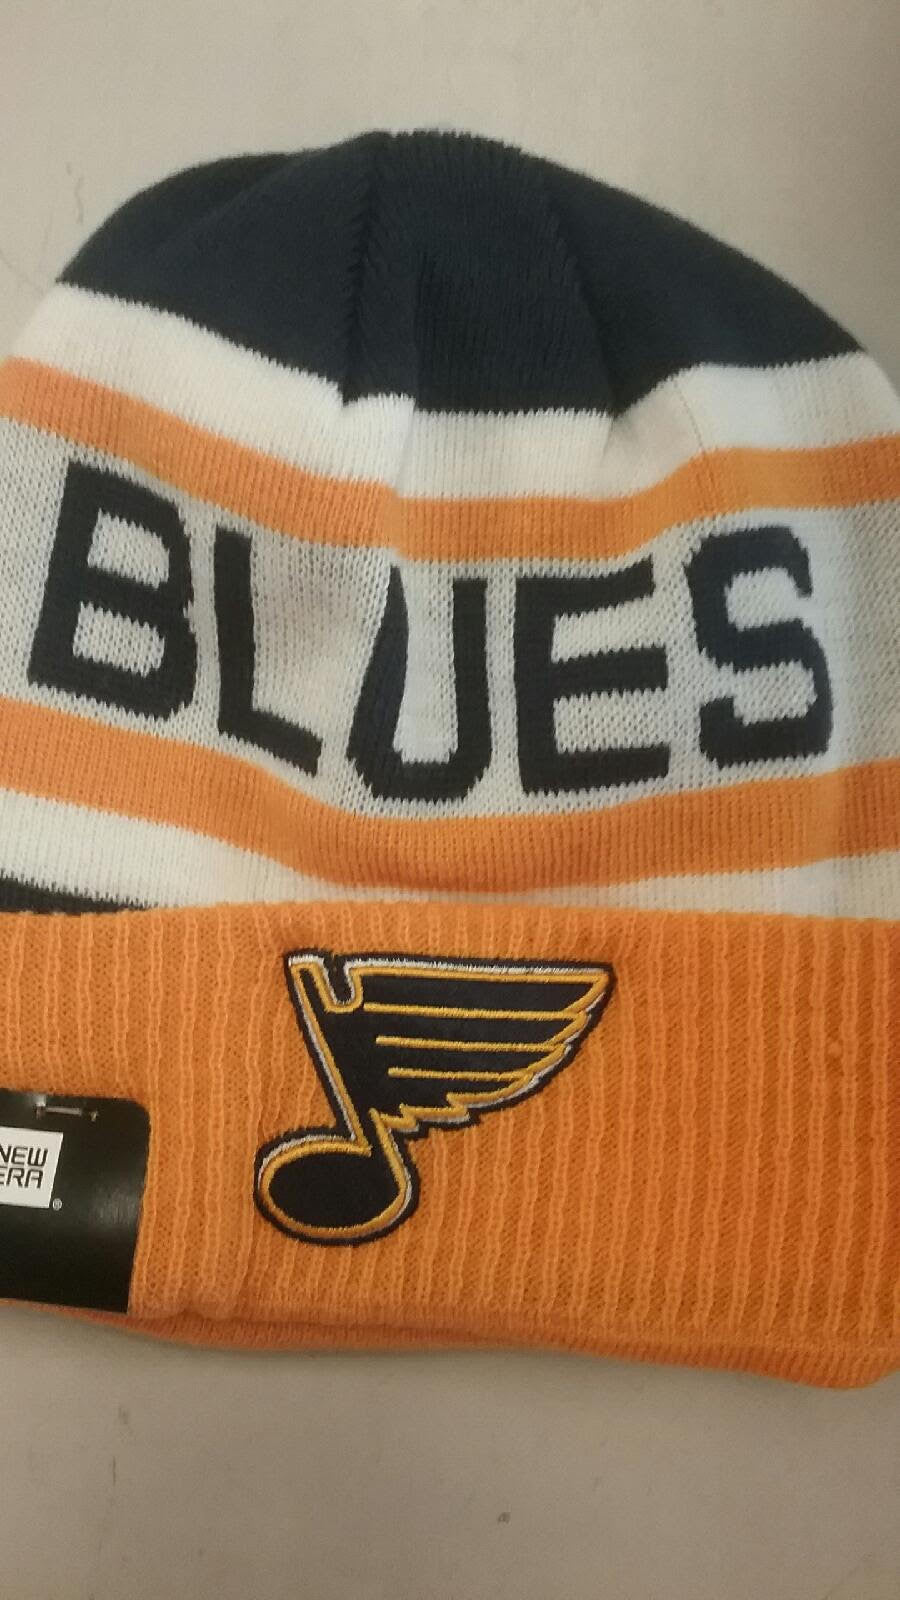 New Era St. Louis Blues NHL Fan Cap, Hats for sale